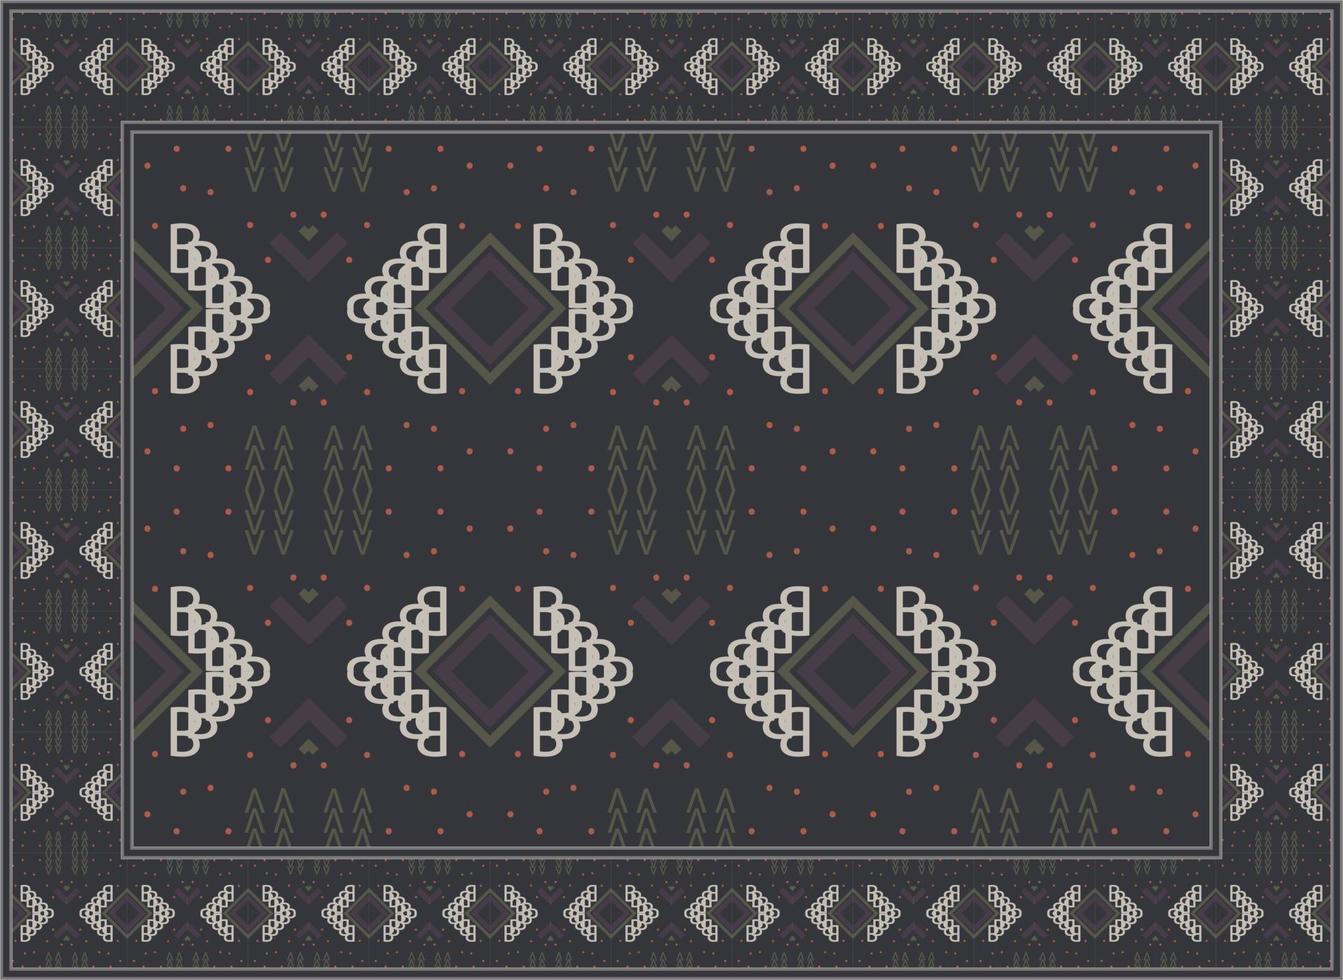 persisch Teppich modern Leben Zimmer, afrikanisch ethnisch nahtlos Muster modern persisch Teppich, afrikanisch ethnisch aztekisch Stil Design zum drucken Stoff Teppiche, Handtücher, Taschentücher, Schals Teppich, vektor